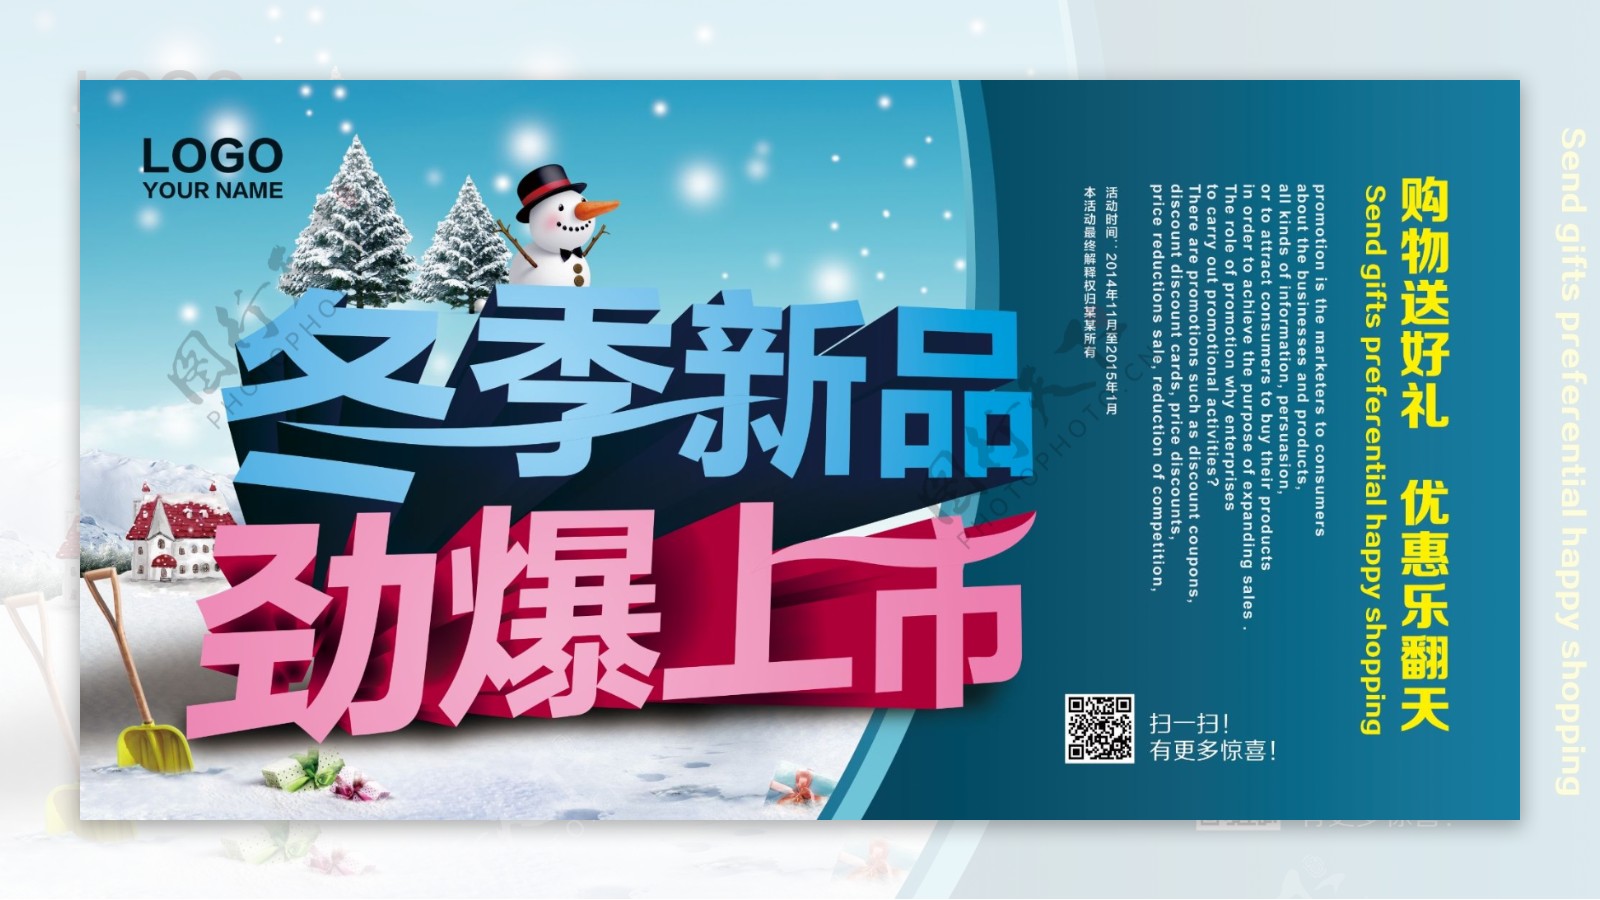 冬季新品劲爆上市促销海报设计PSD素材